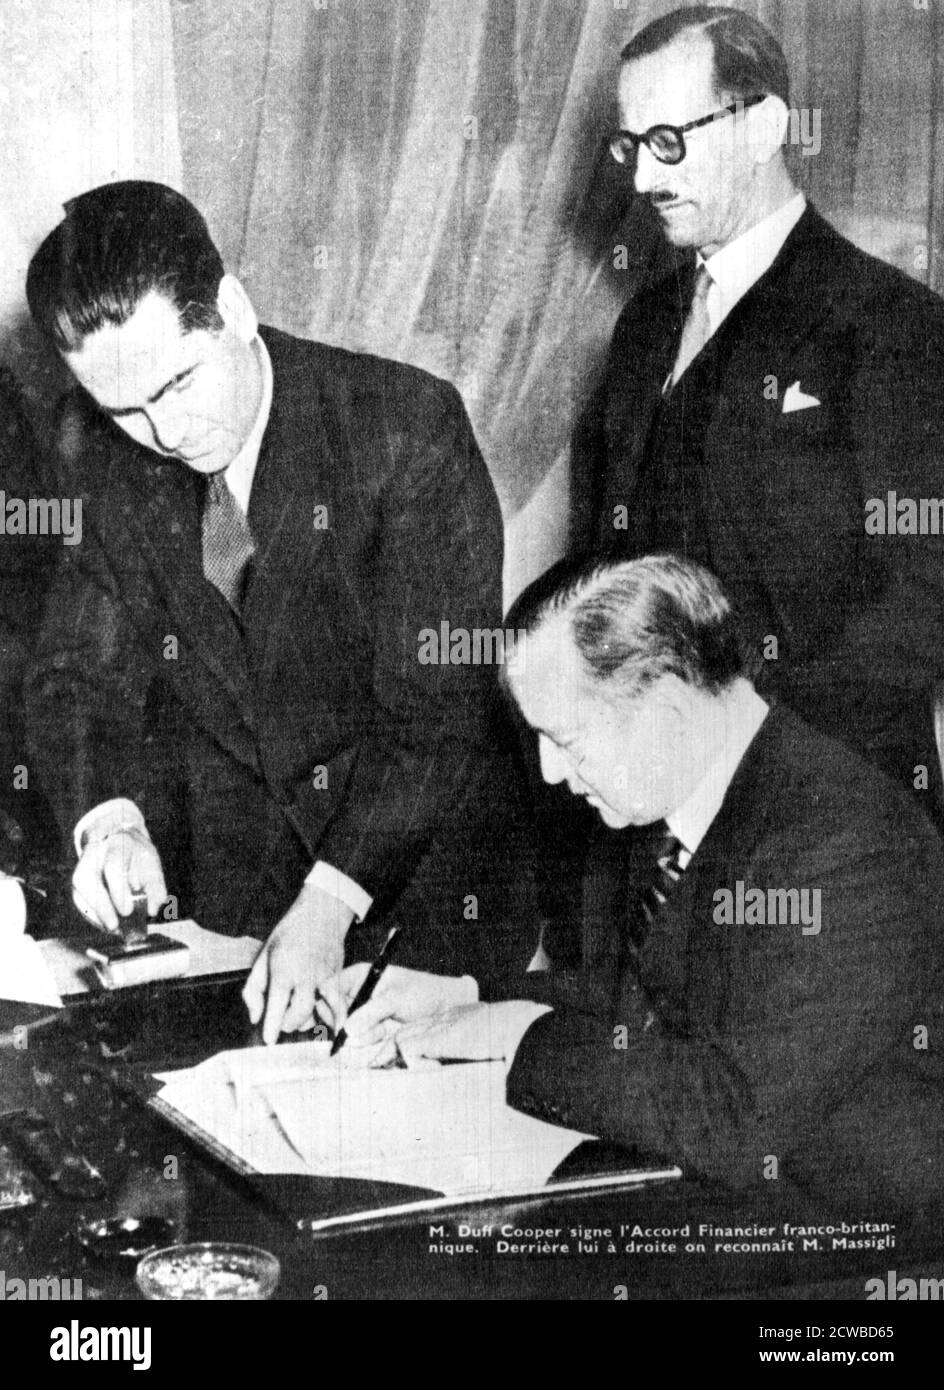 Unterzeichnung des Finanzabkommens zwischen Großbritannien und den Freien Franzosen, Algier, 8. Februar 1944. Duff Cooper, britischer Regierungsallirat an die Freien Franzosen, unterzeichnet das Dokument. Hinter ihm steht Rene Massigli, der freie französische Kommissar für auswärtige Angelegenheiten. Der Fotograf ist unbekannt. Stockfoto